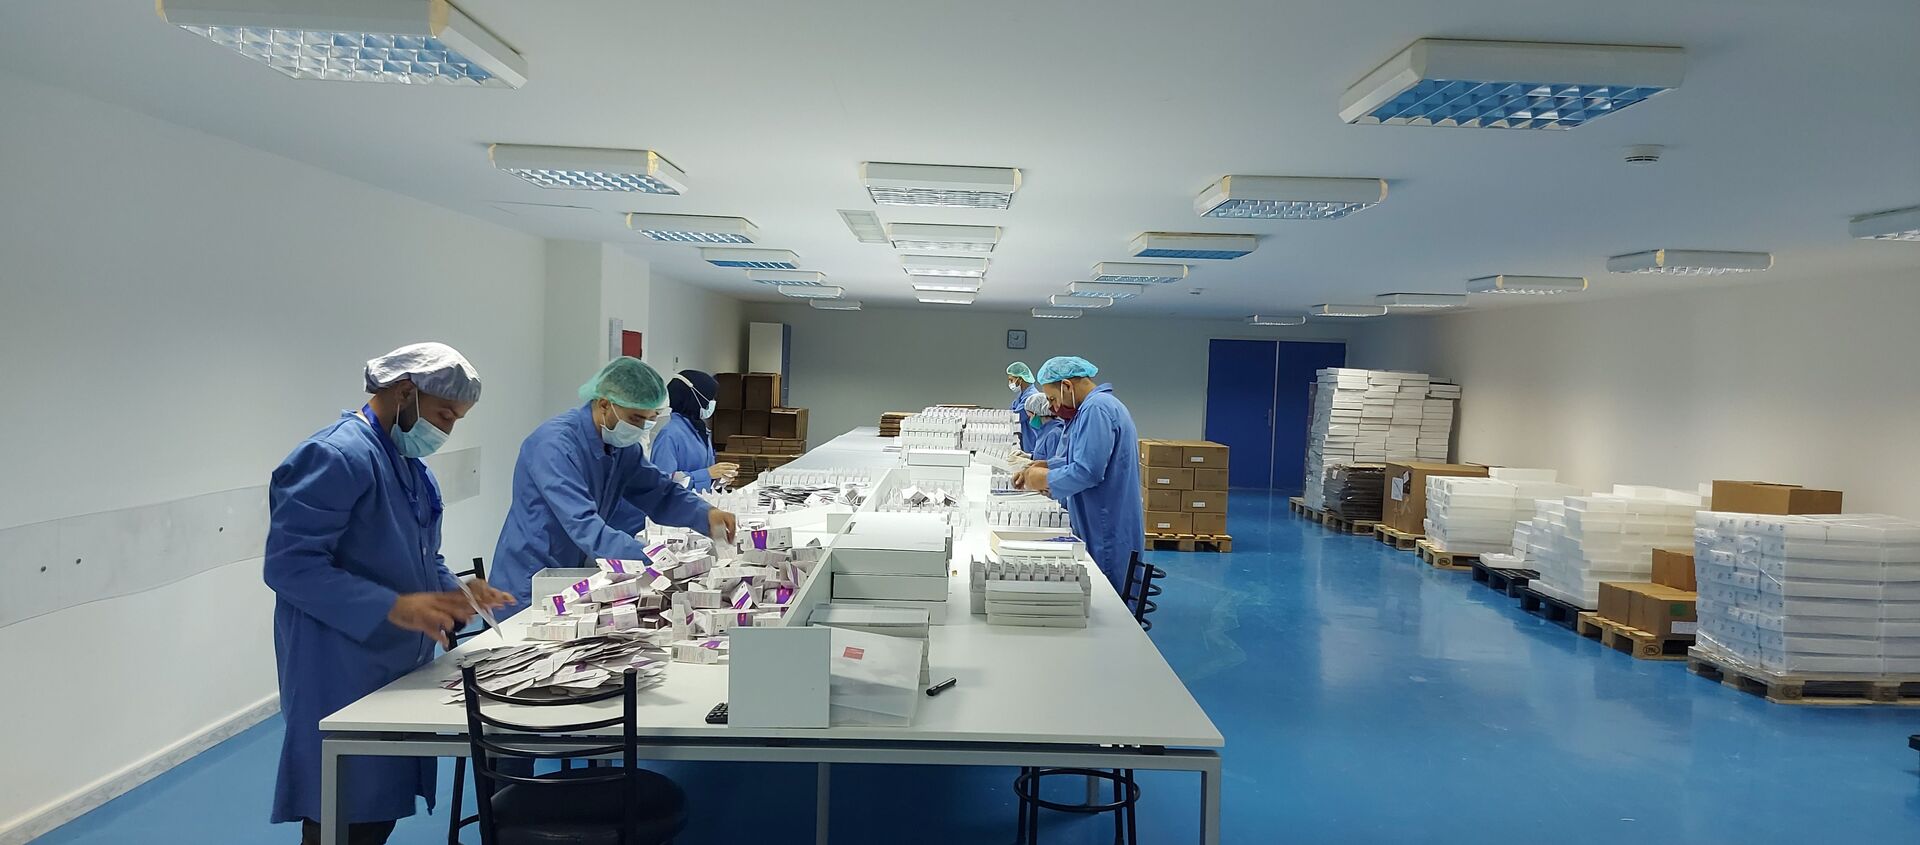 مصنع أروان للصناعات الدوائية اللبنانية يستعد لتصنيع لقاح سبوتنيك، لبنان 4 يونيو 2021 - سبوتنيك عربي, 1920, 29.07.2021